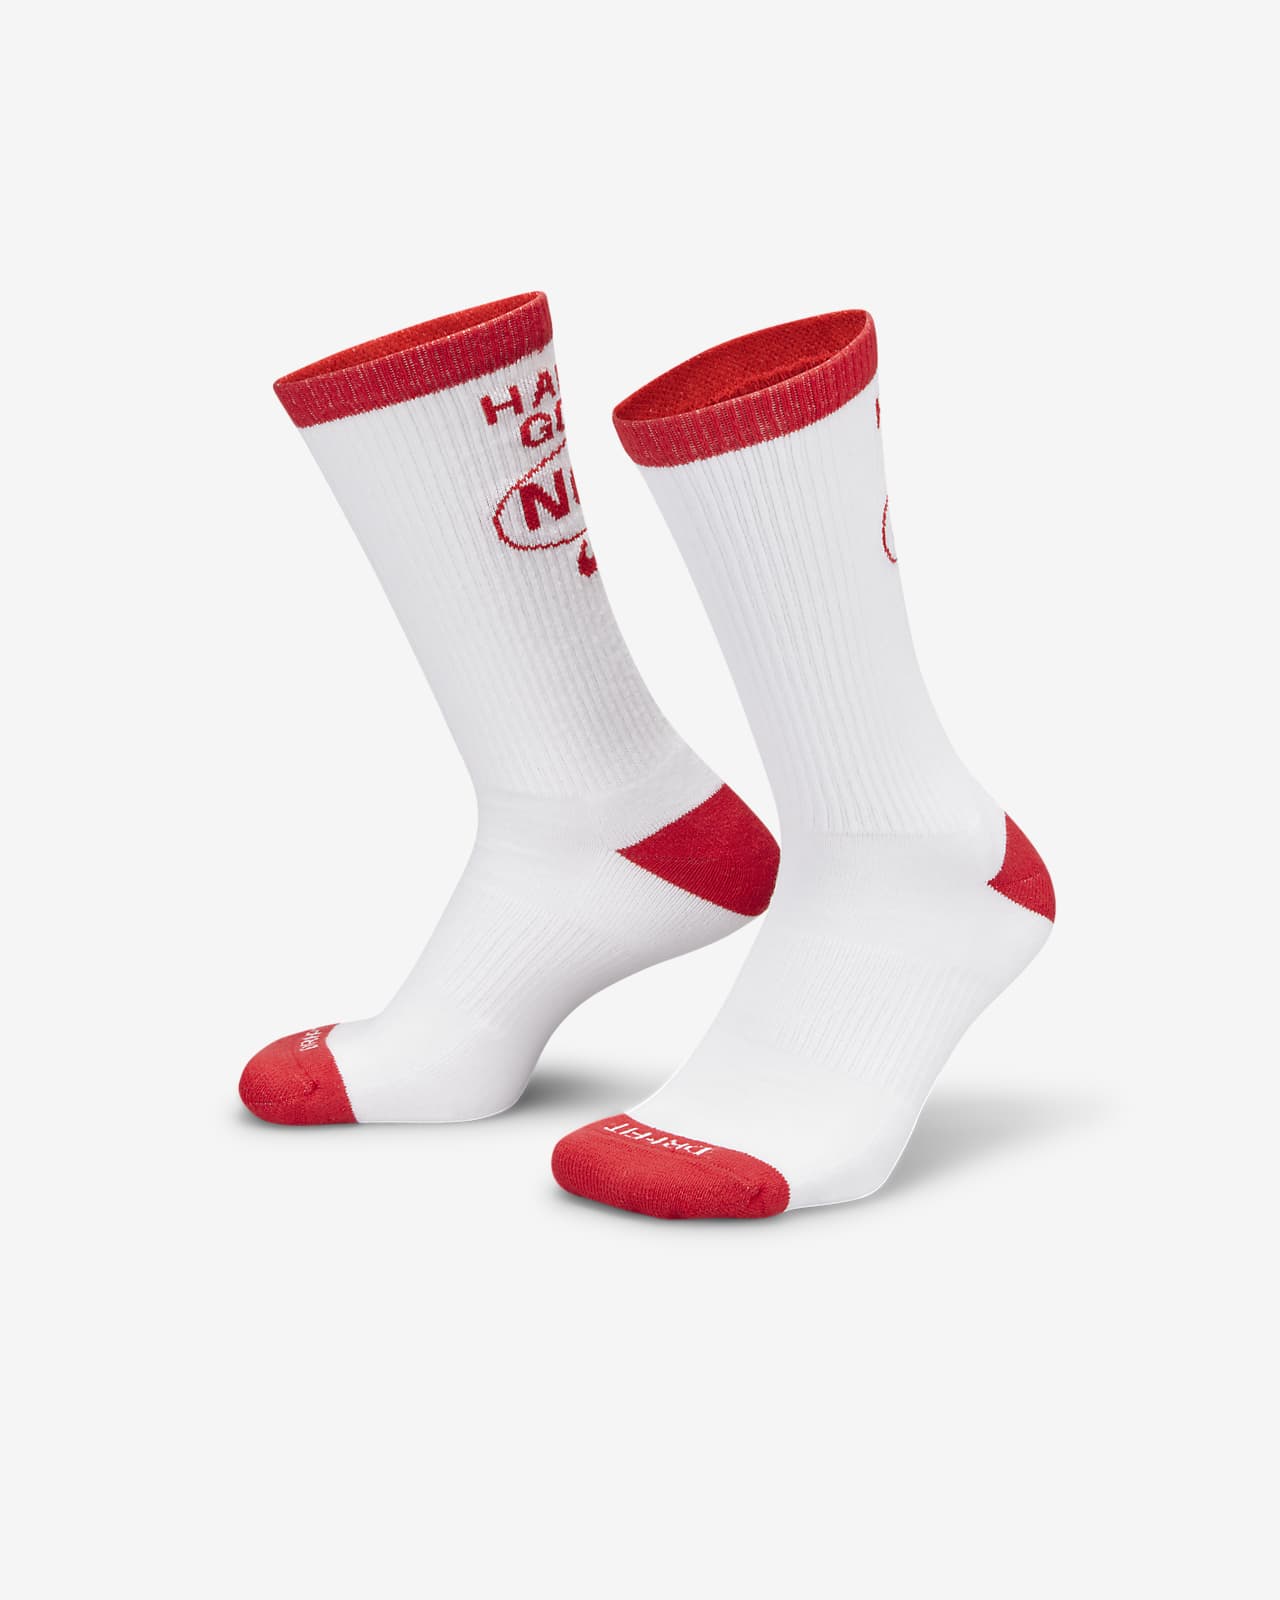 Situatie Pellen Allerlei soorten Nike Everyday Plus Cushioned Crew Socks (1 Pair). Nike JP